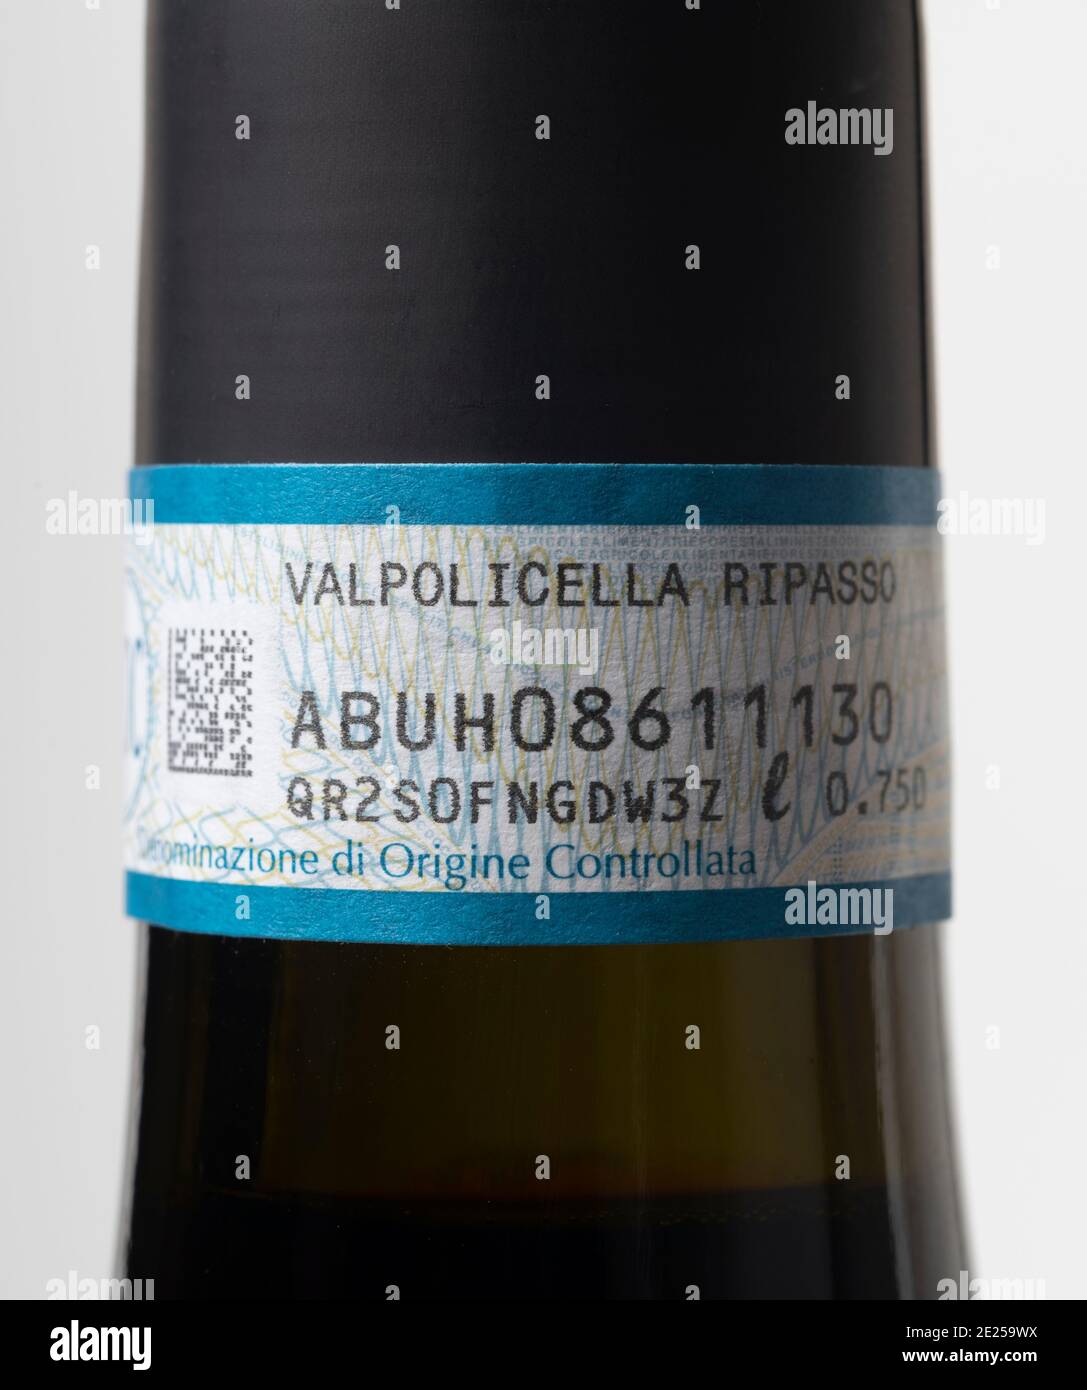 Valpolicella Ripasso vin rouge italien numéro de série étiquette de col Banque D'Images